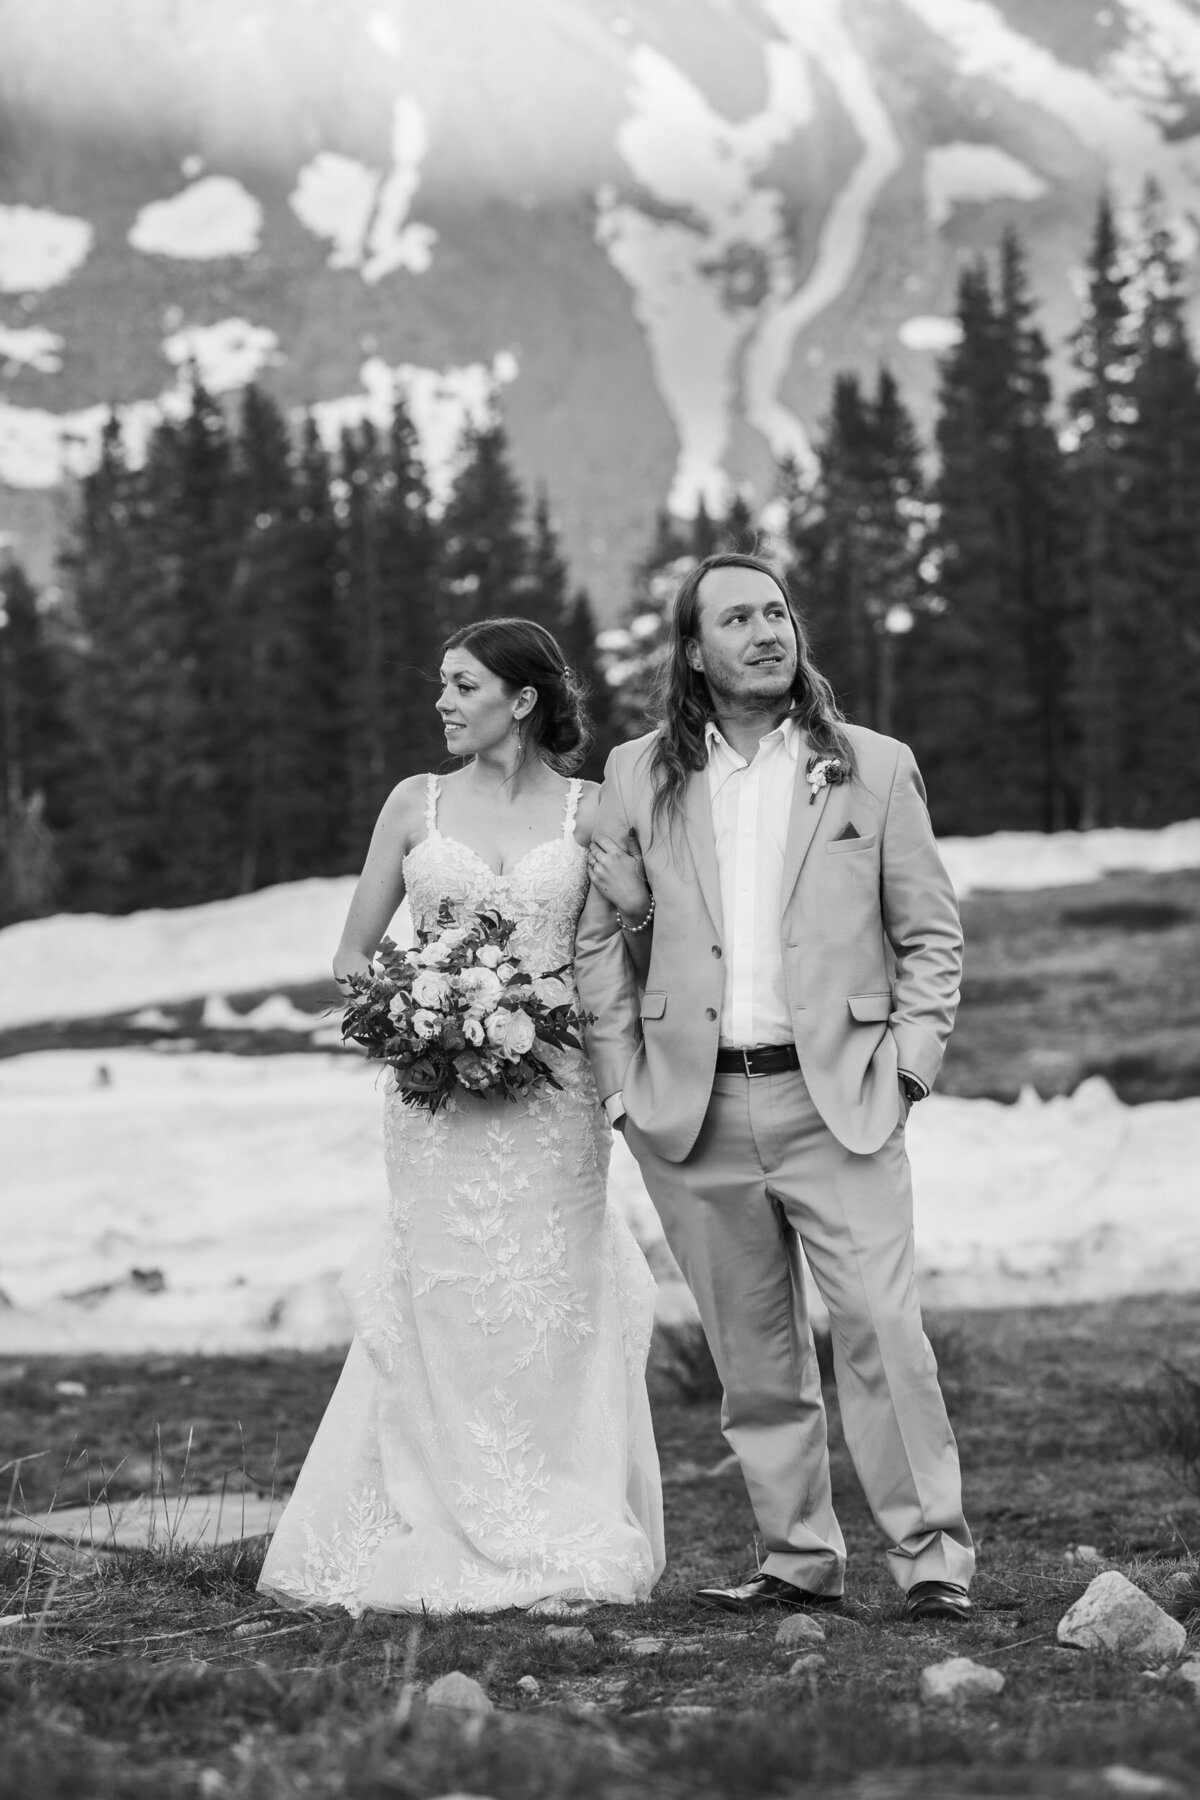 Wedding photographer Estes Park Colorado